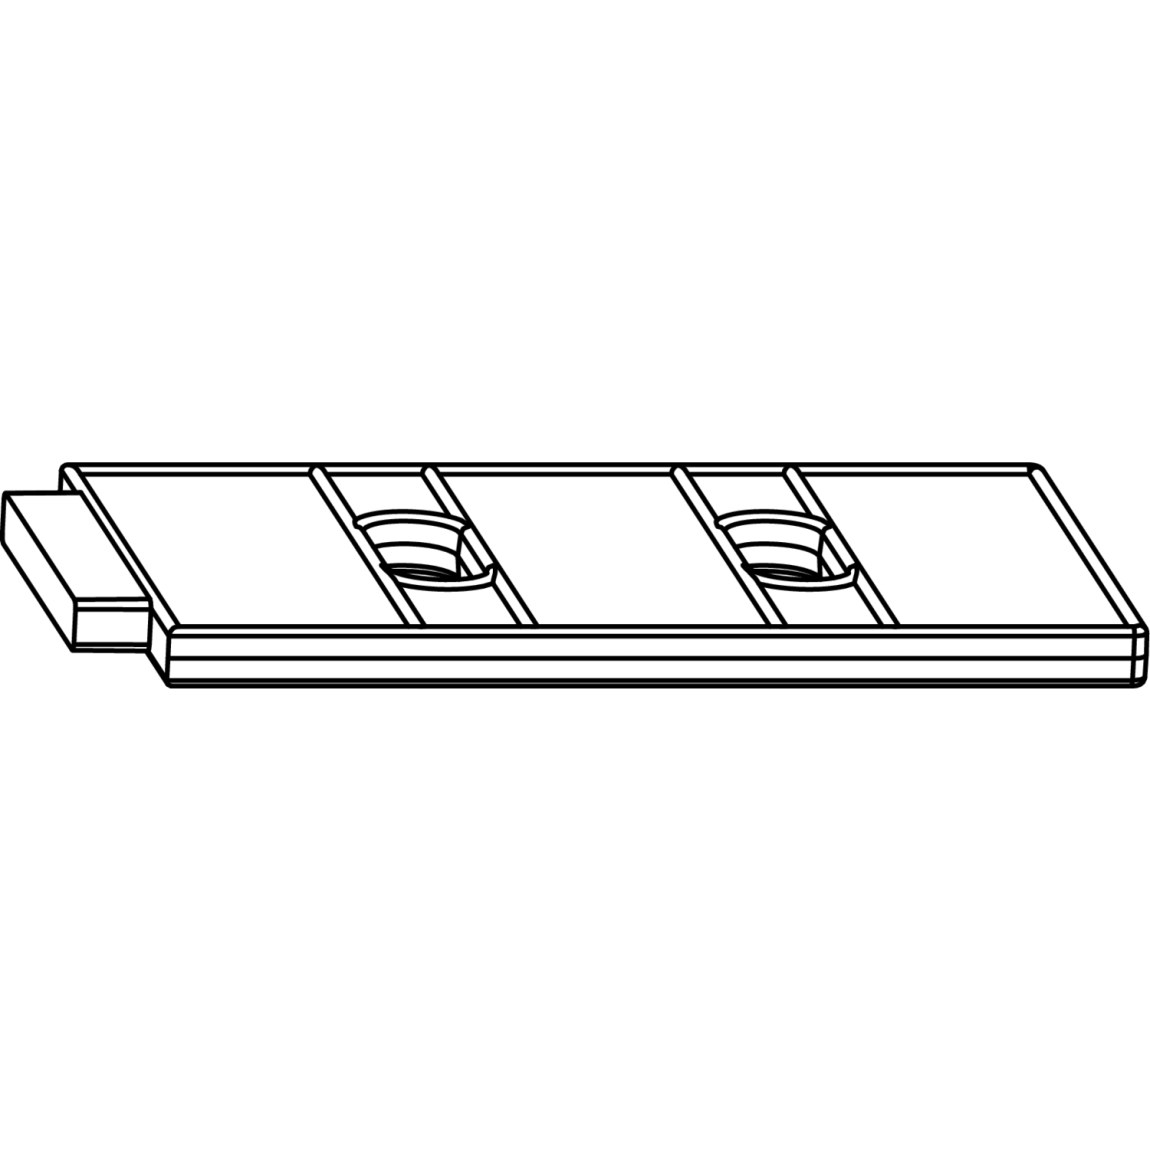 MACO Fiber Therm těsnění pro těsnící desku, 42 mm, dřevo, stříbrná (454861) - Železářství Posuvné kování HS portály Maco